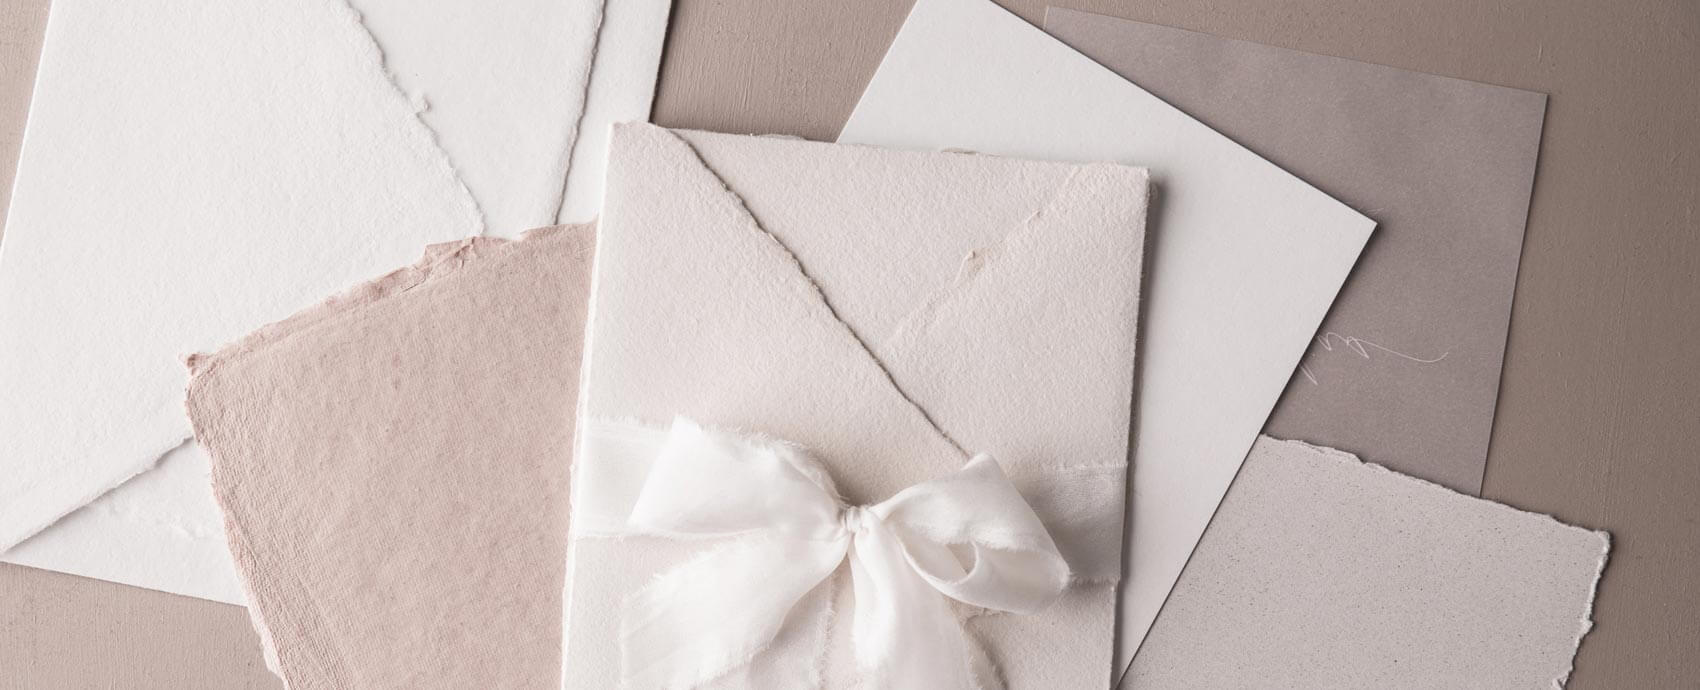 Papierauswahl für Hochzeitseinladungen: Büttenpapier, Transparentpapier, handgerissenes Baumwollpapier